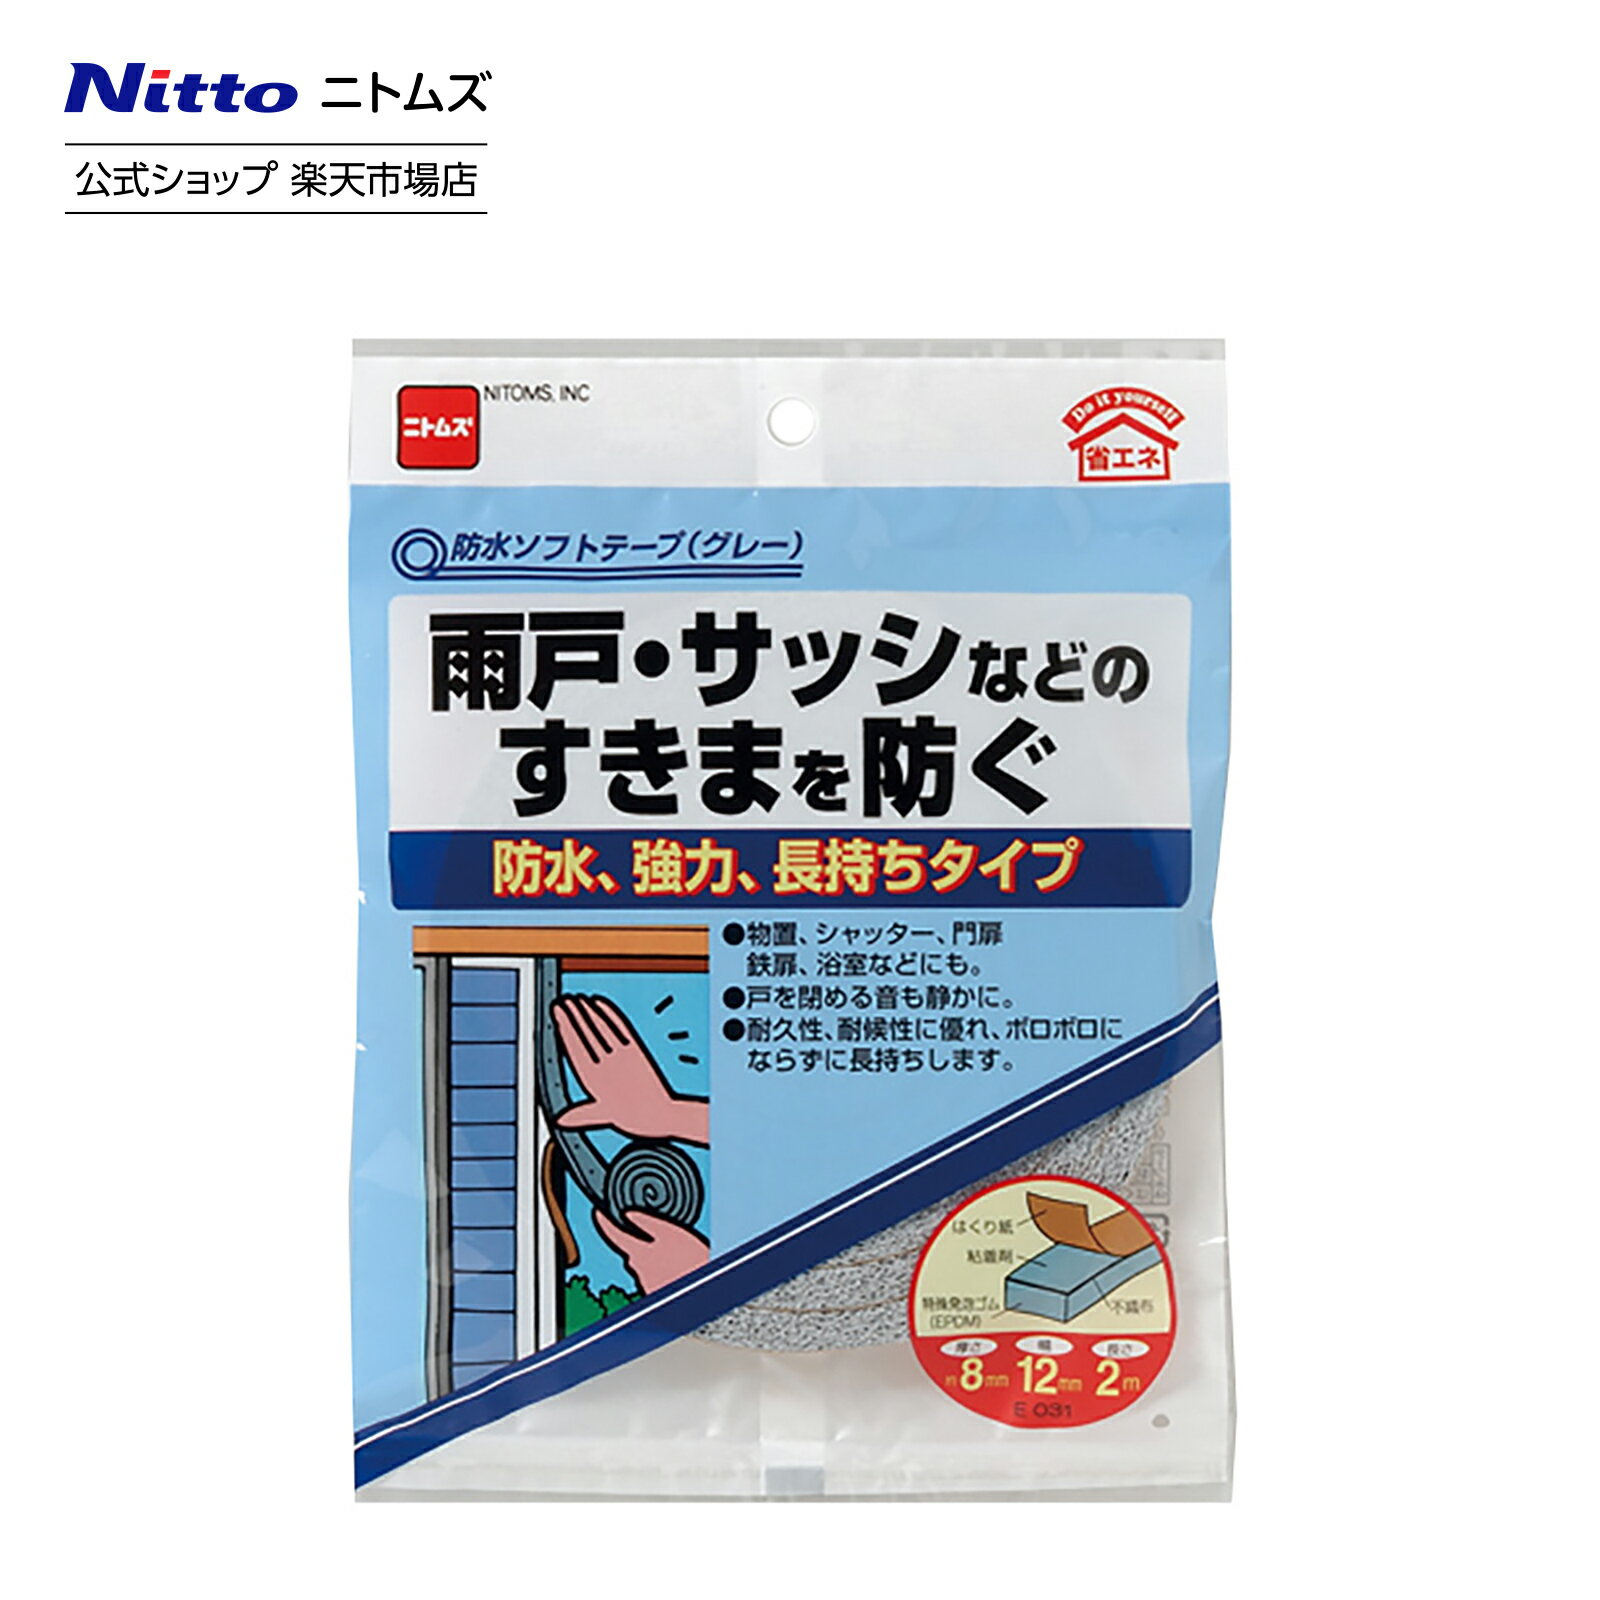 【公式】 ニトムズ すきまテープ 防水 ソフトテープ グレー E0310 | すきま風防止 ドア 窓 テープ